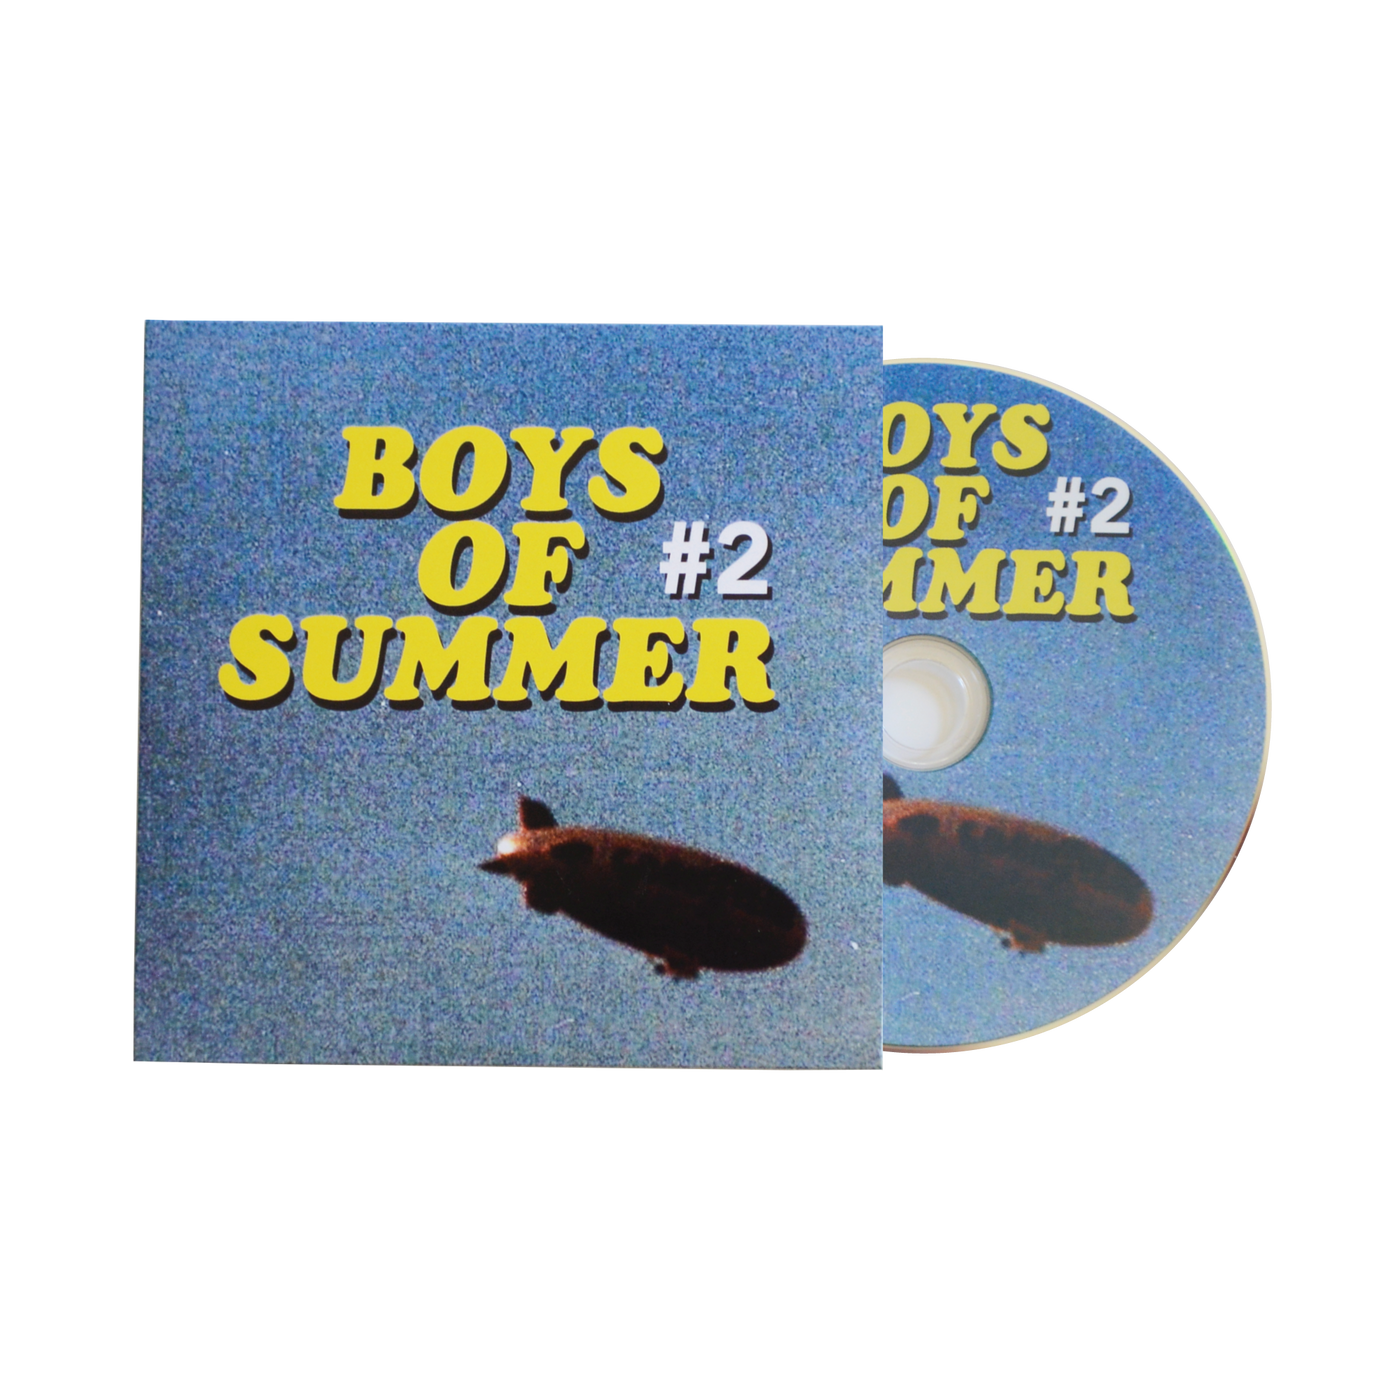 Boys of Summer #2 DVD